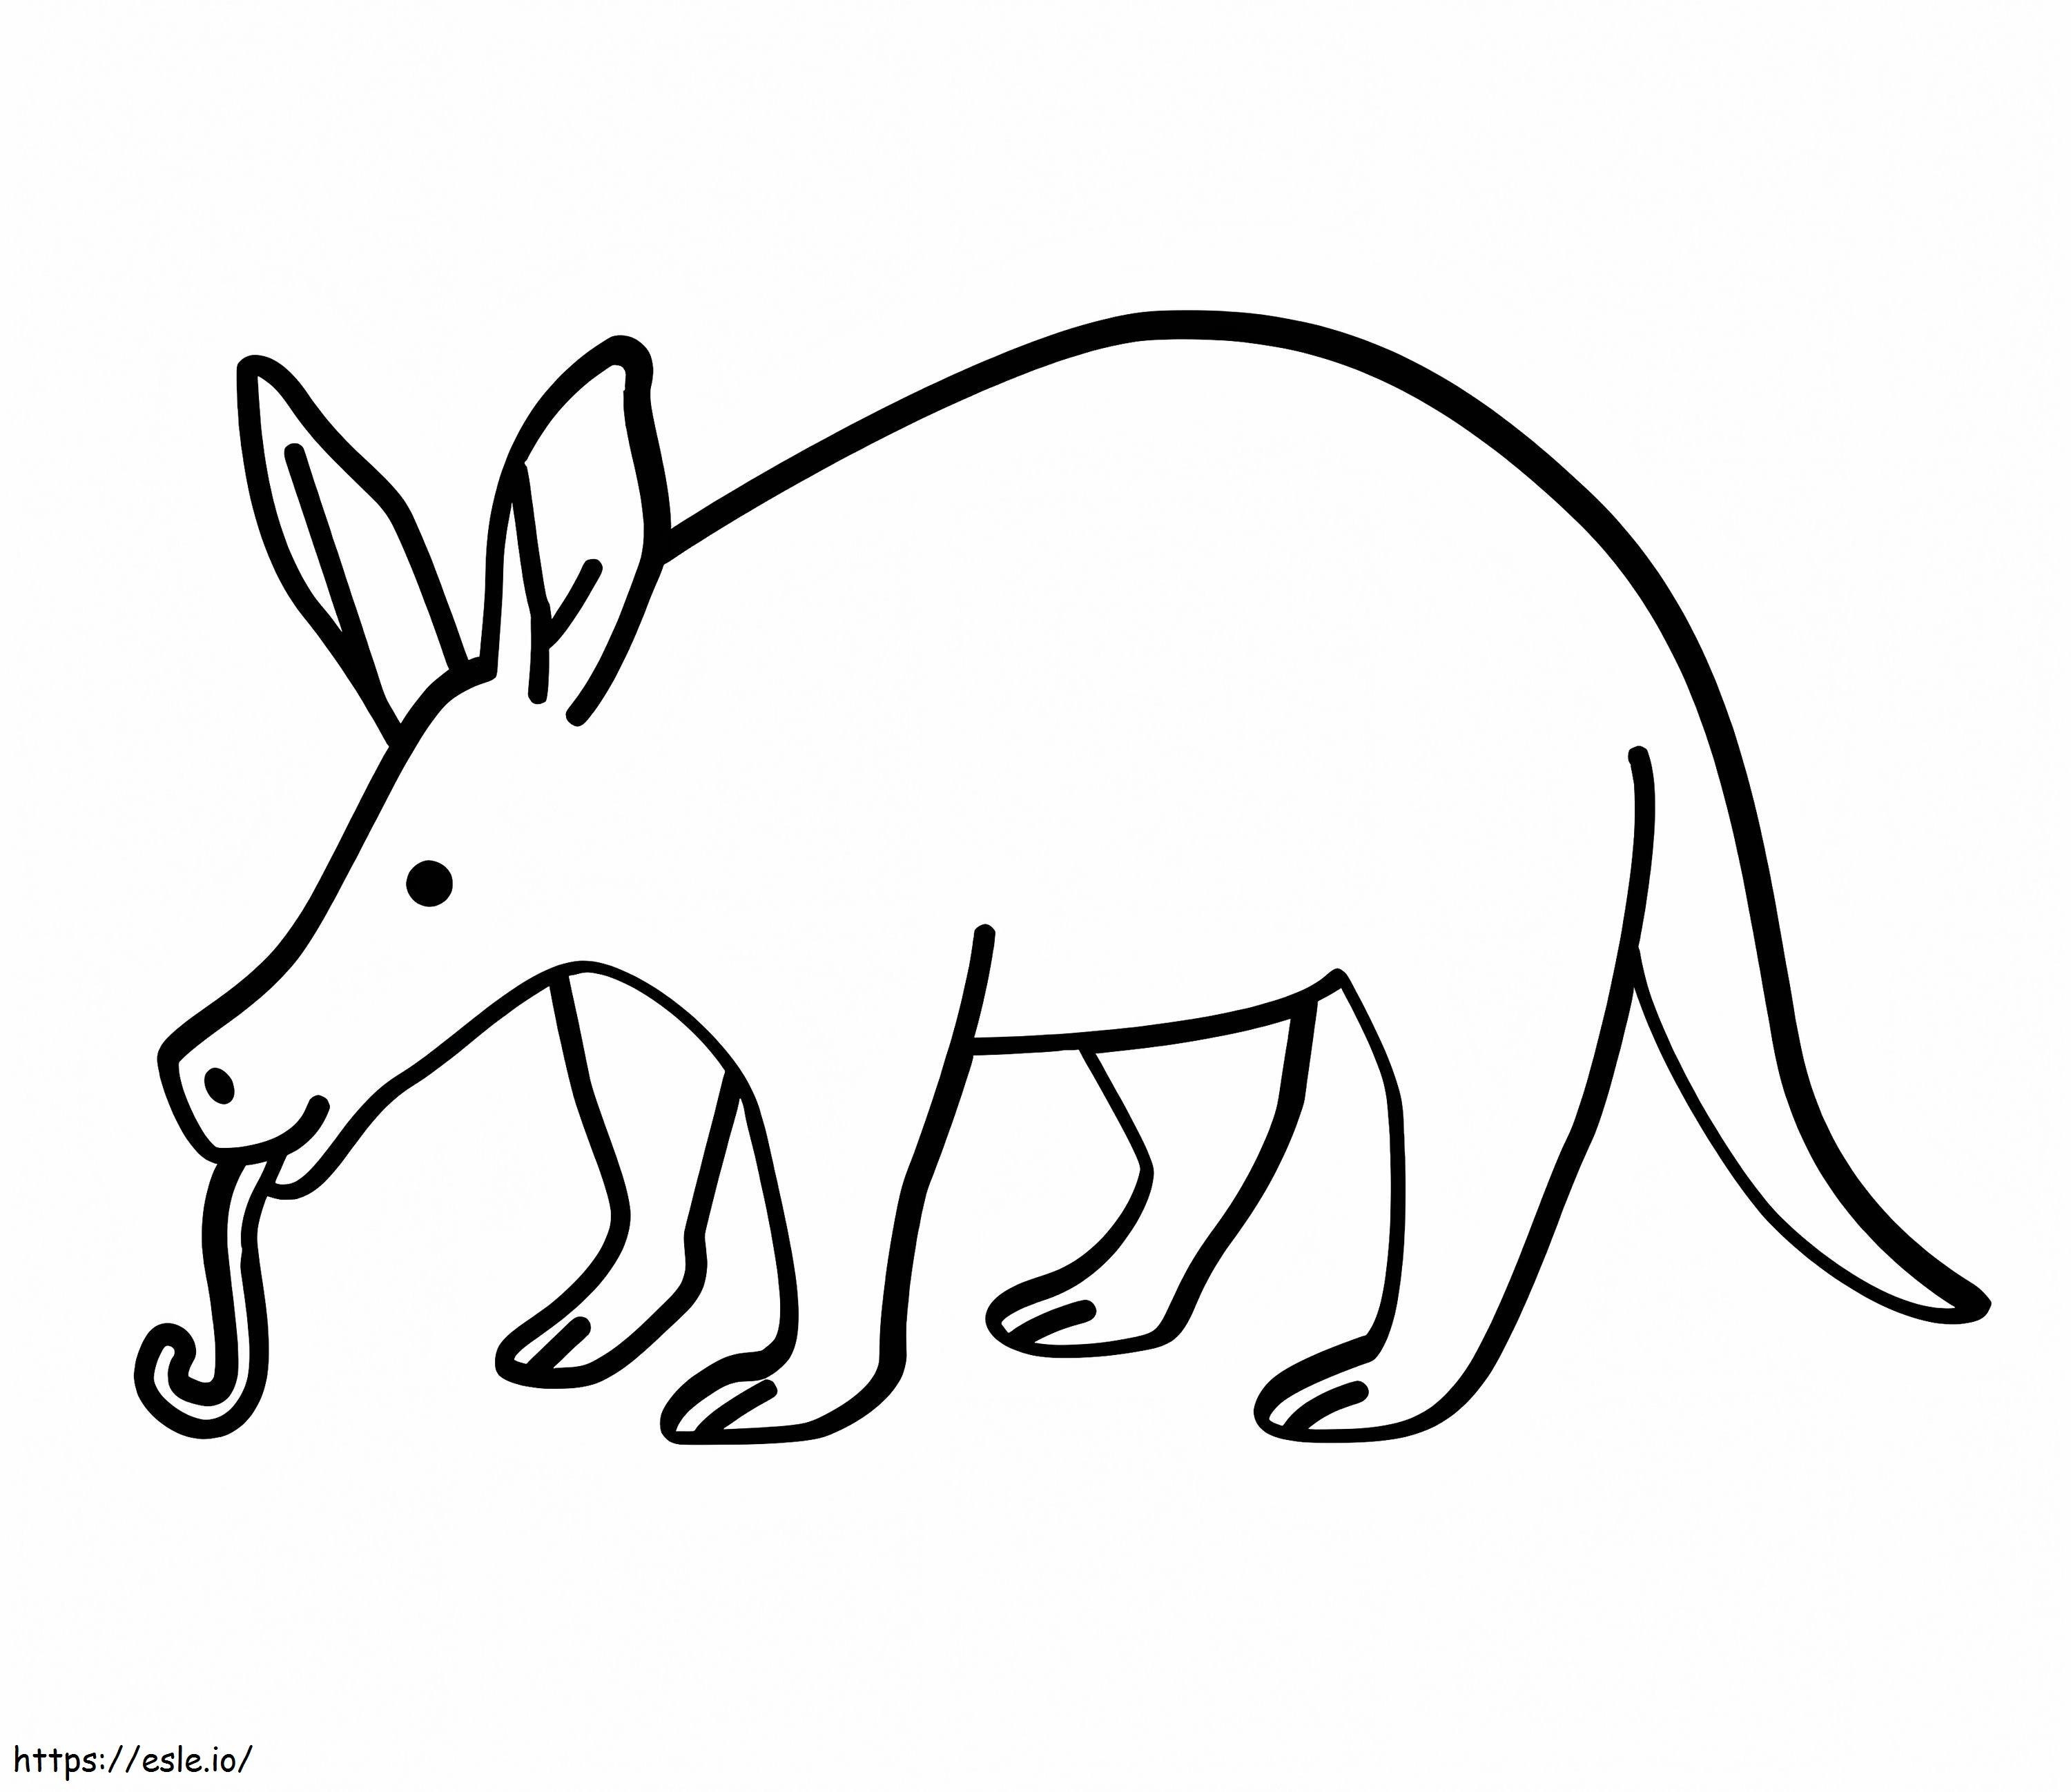 Aardvark divertente da colorare